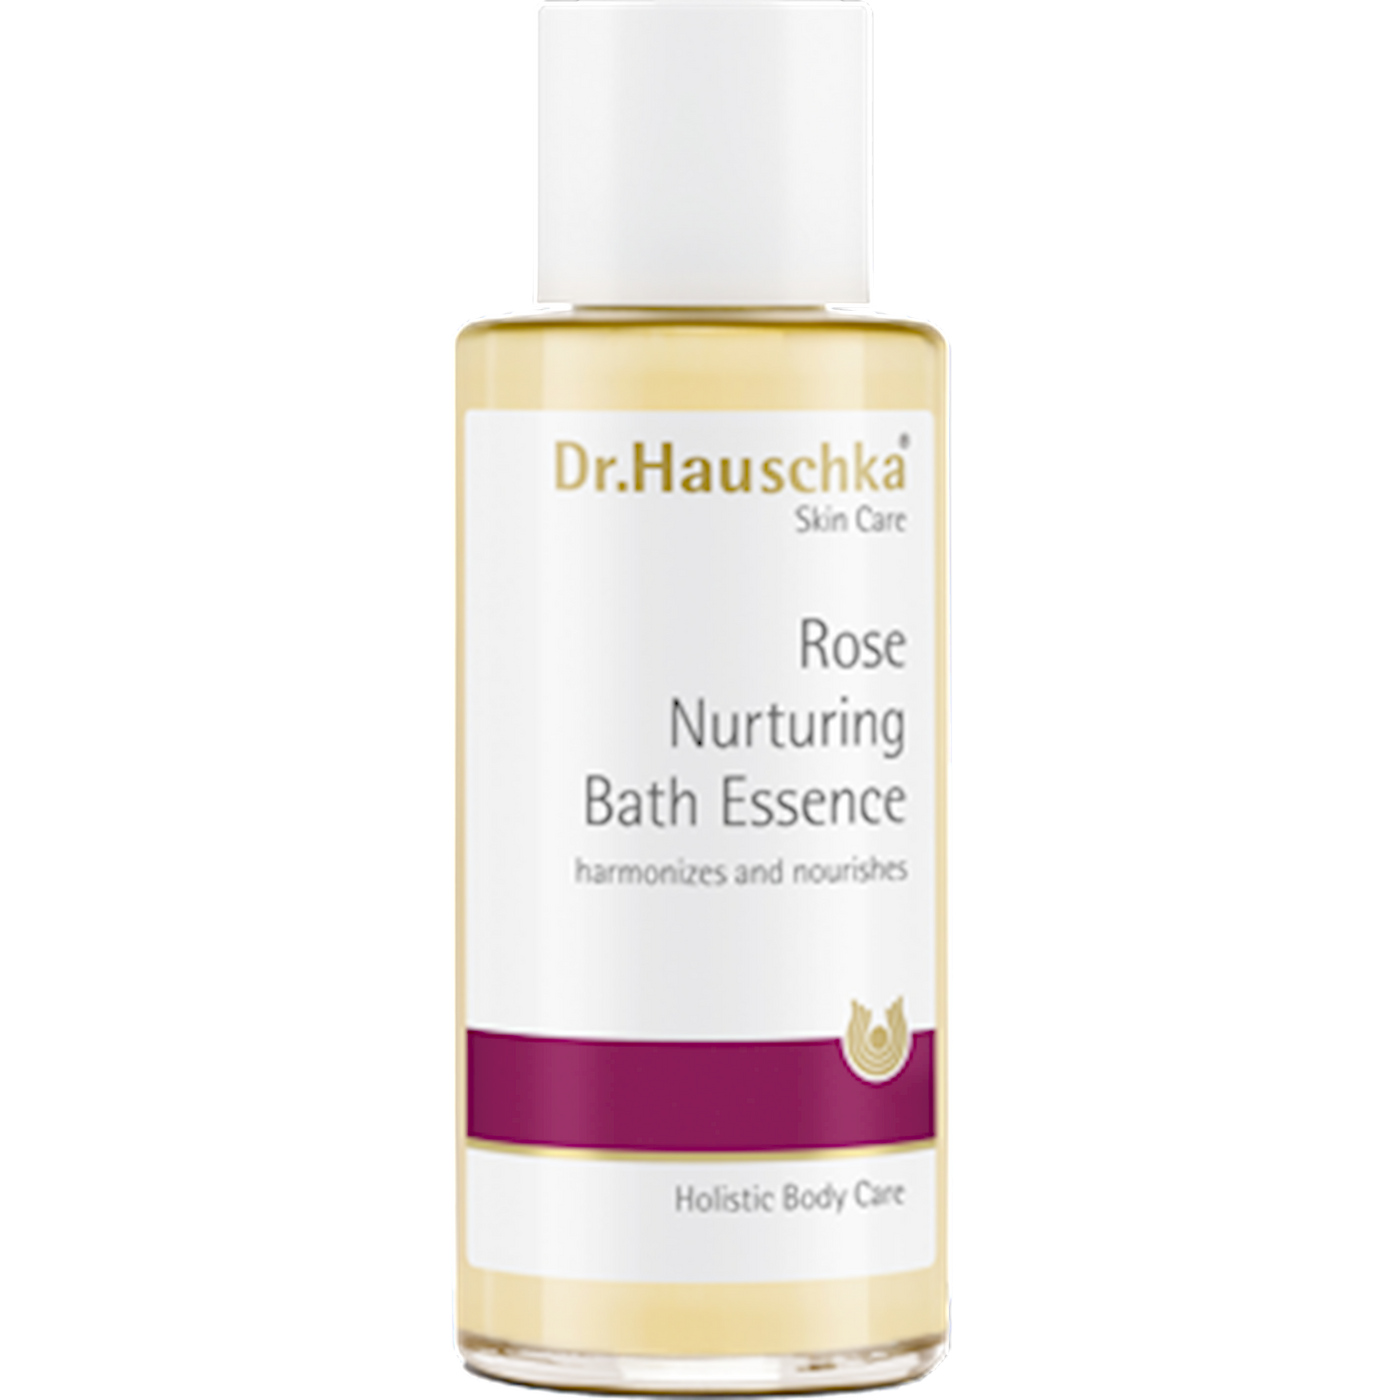 Rose Nurturing Bath Essence 3.4 fl oz Curated Wellness